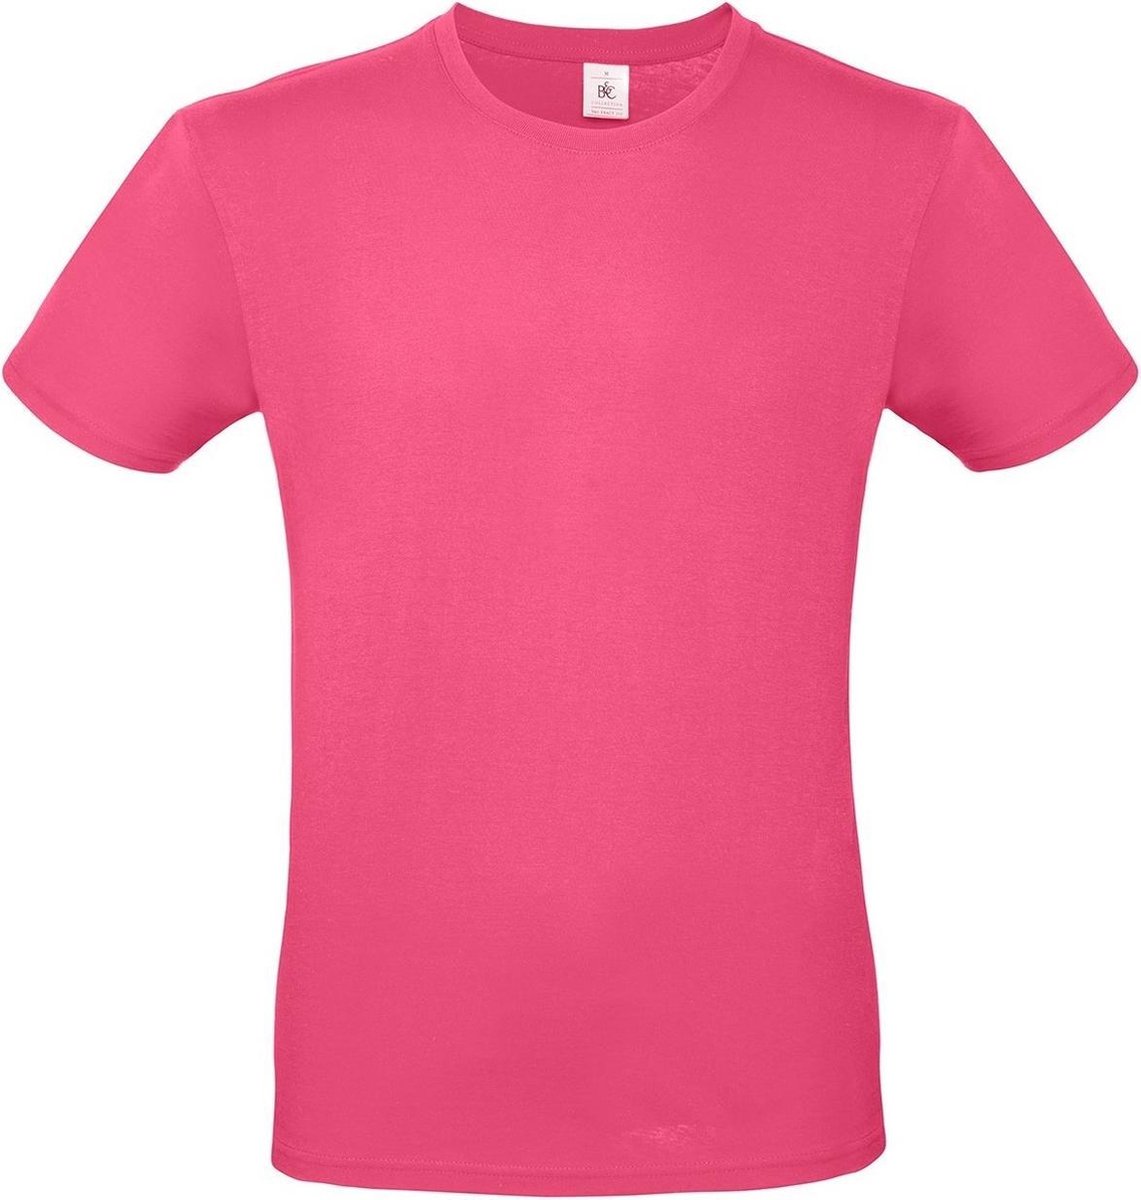 Set van 2x stuks fuchsia roze basic t-shirt met ronde hals voor heren - katoen - 145 grams - shirts / kleding, maat: S (48)